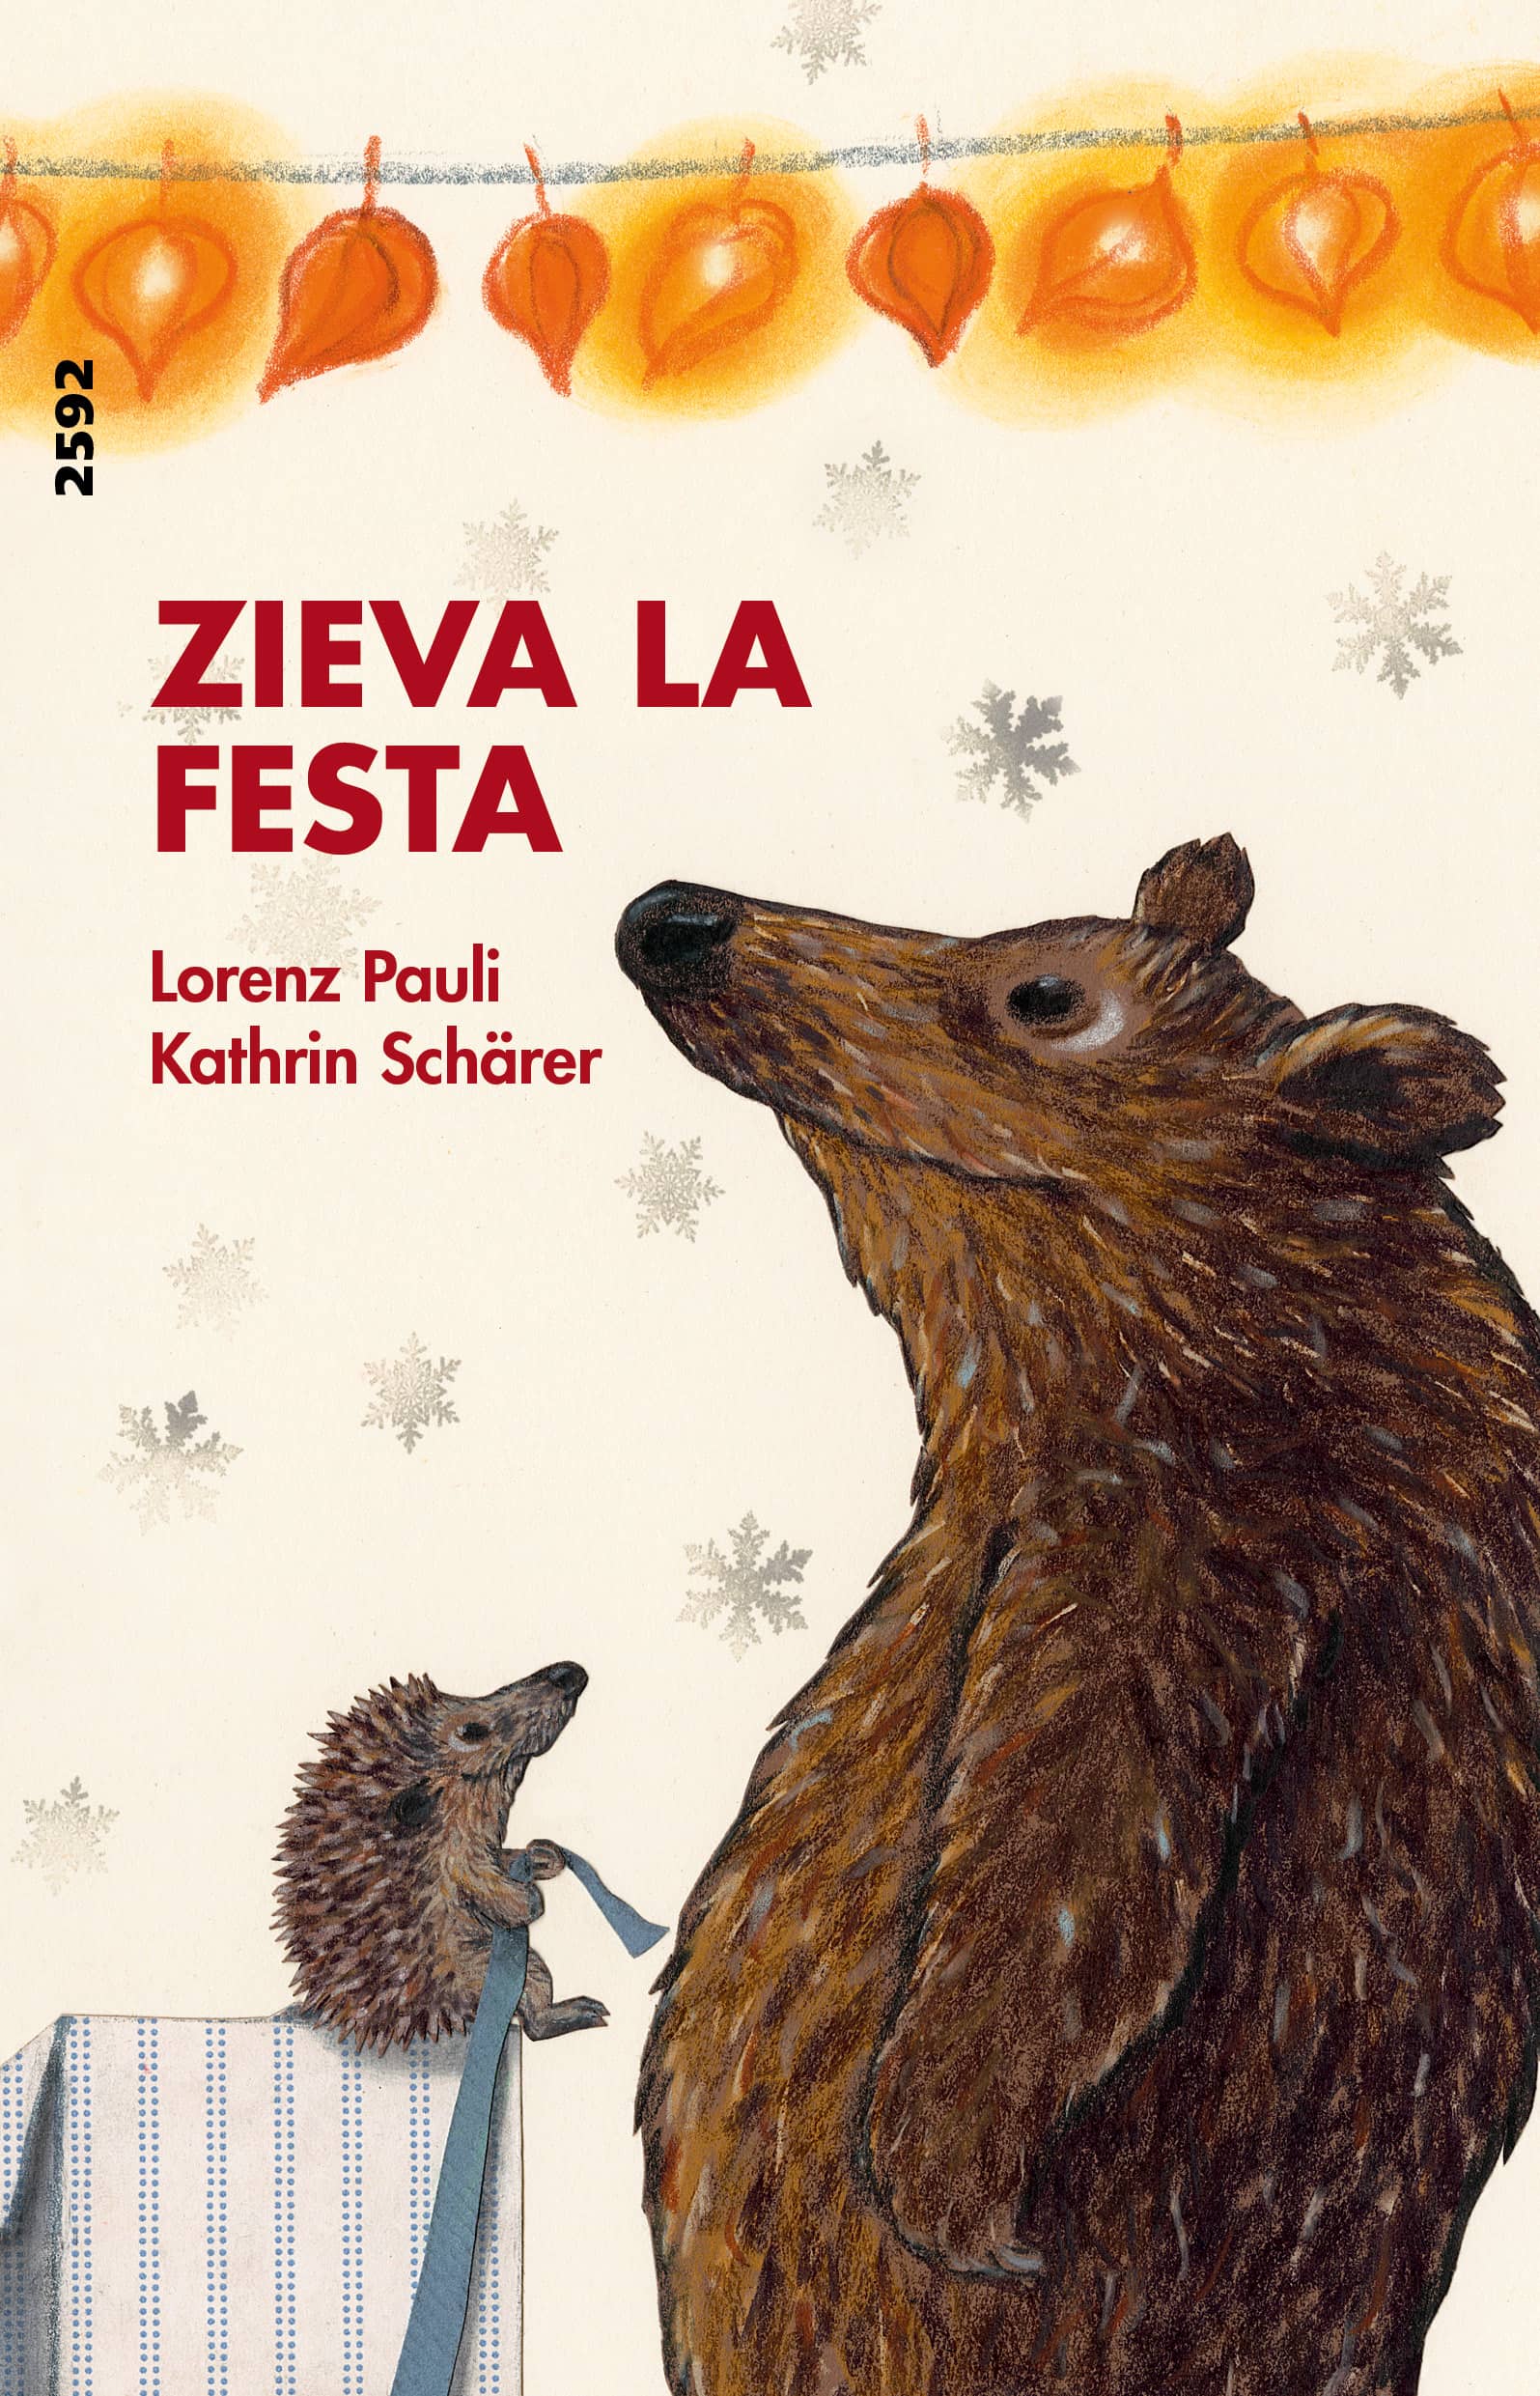 Zieva la festa, ein Kinderbuch von Lorenz Pauli, Illustration von Kathrin Schaerer, SJW Verlag, Monate, Jahreszeiten